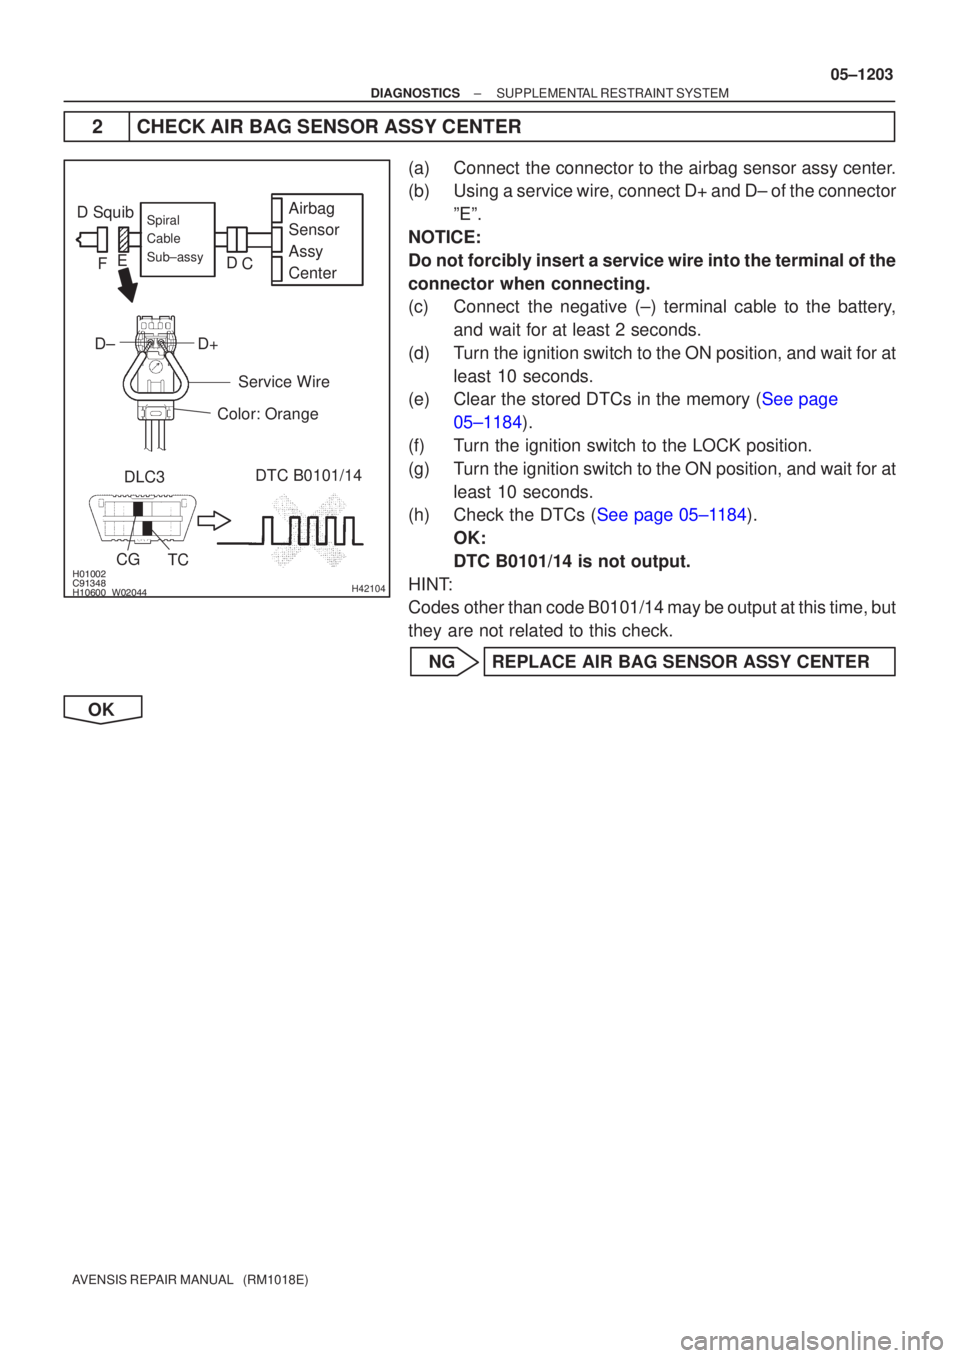 TOYOTA AVENSIS 2005  Service Repair Manual 


	\bH42104
D SquibAirbag
Sensor
Assy
Center
D±D+Spiral
Cable
Sub±assy
Color: Orange
TC
CG
DLC3 DTC B0101/14
Service Wire
C
D
E
F
±
DIAGNOSTICS SUPPLEMENTAL RESTRAINT SYSTEM
05